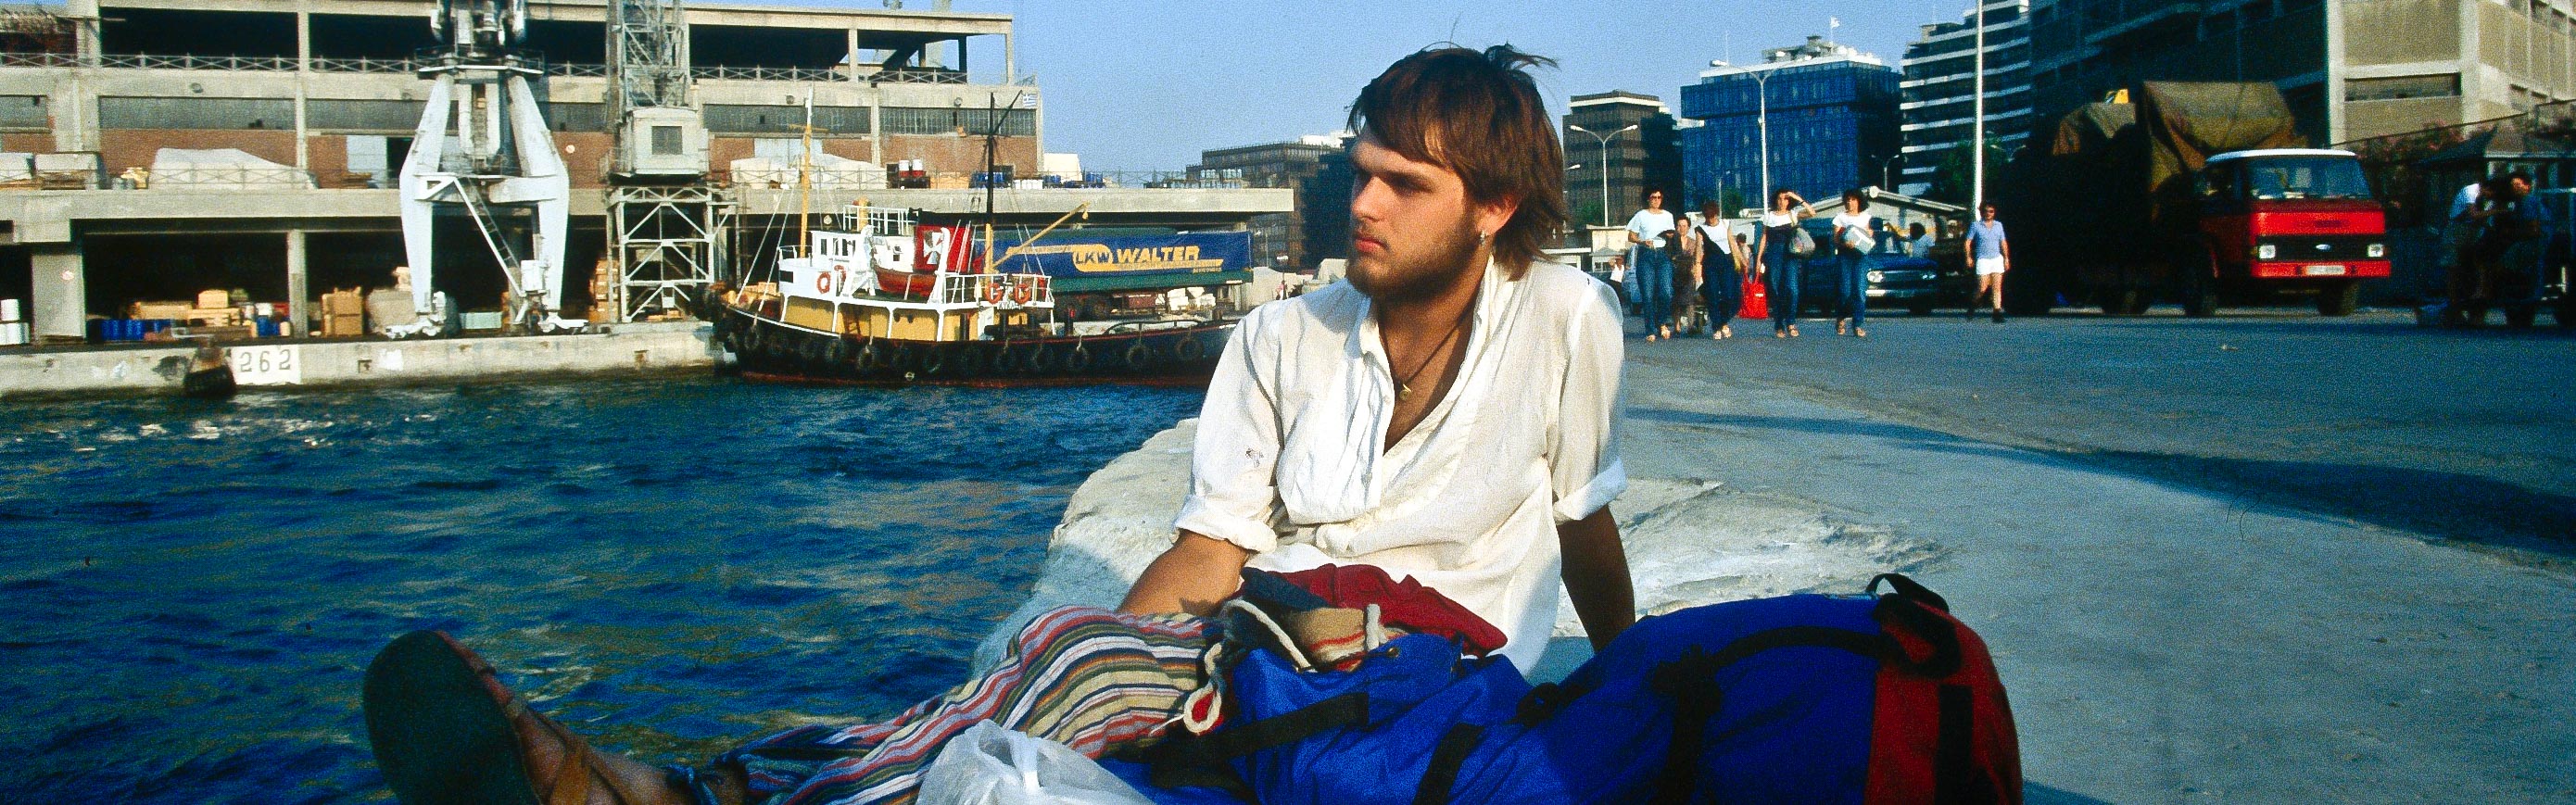 Piräus, Warten auf das Schiff nach Haifa, 1983 (Foto: Susanne Traud)